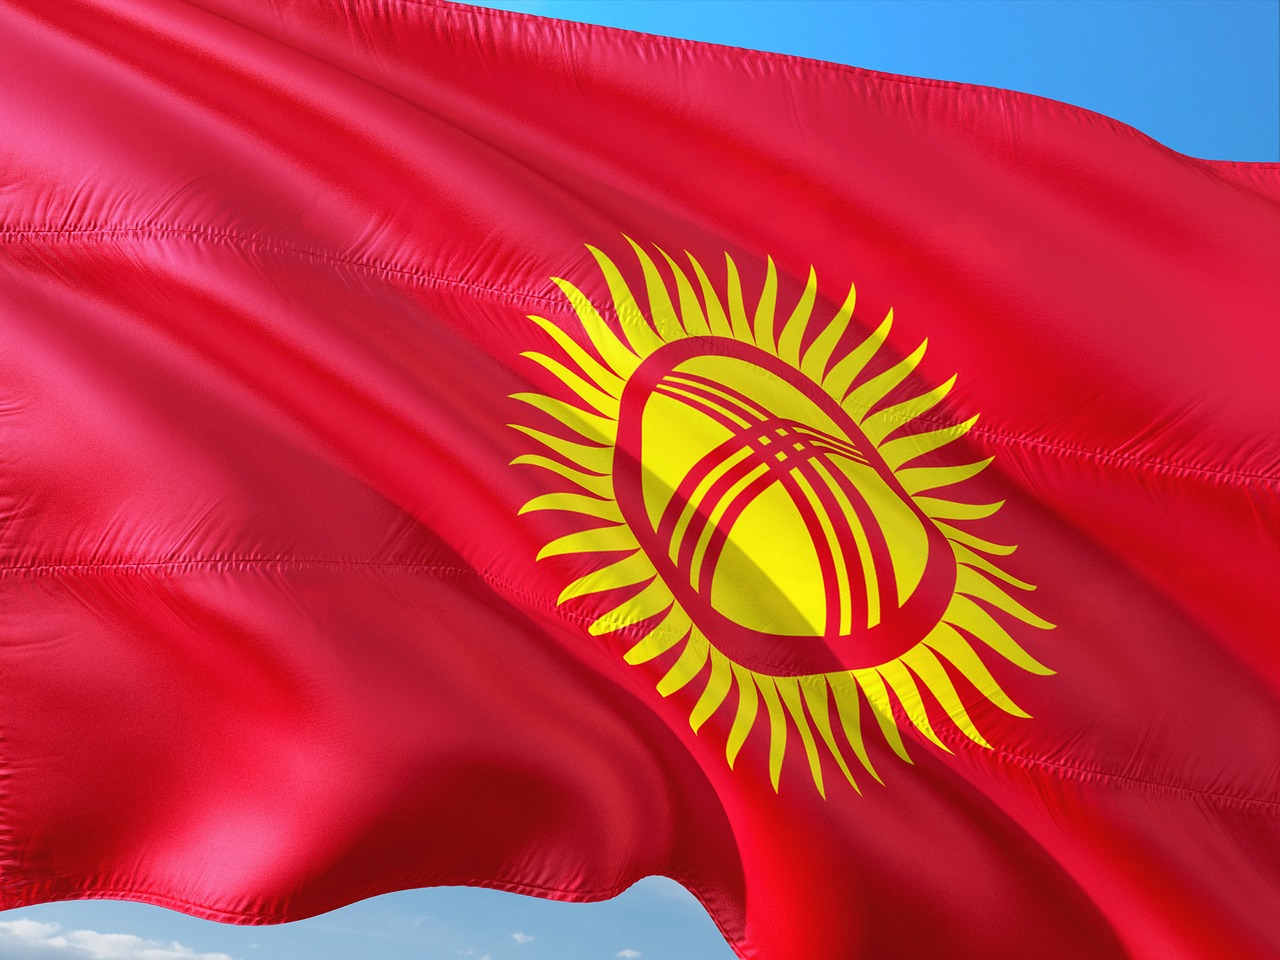 Адамбай и Ко кошмарят соседей: из-за запрета «Базза Лайтера» в Казахстане, в Кыргызстане он тоже не выйдет